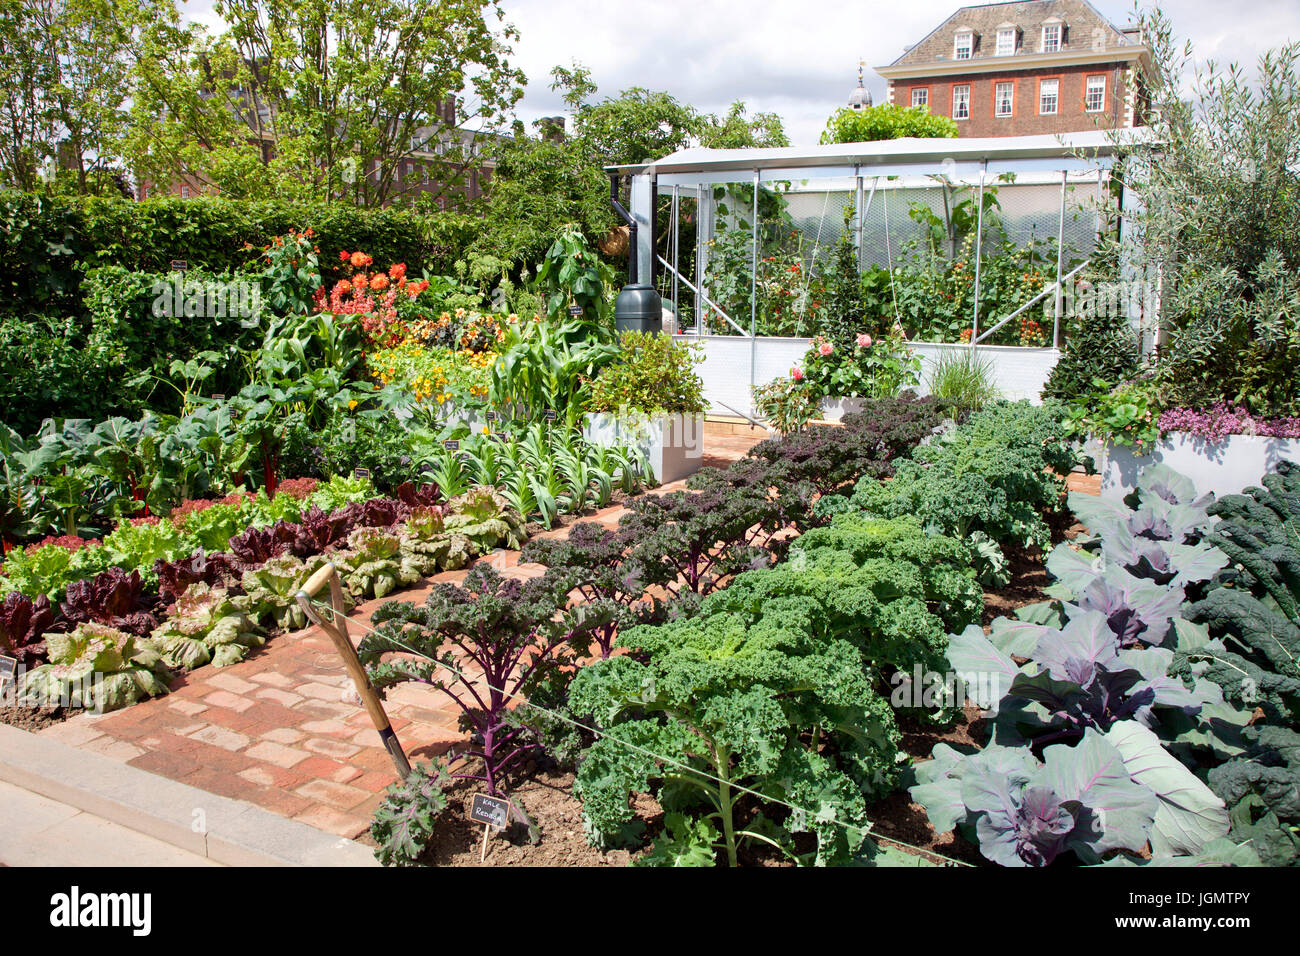 Chris Evans Taste Garden, a BBC Radio 2 Feel Good Garden, designed by Jon Wheatley for  Chelsea Flower Show 2017 Stock Photo